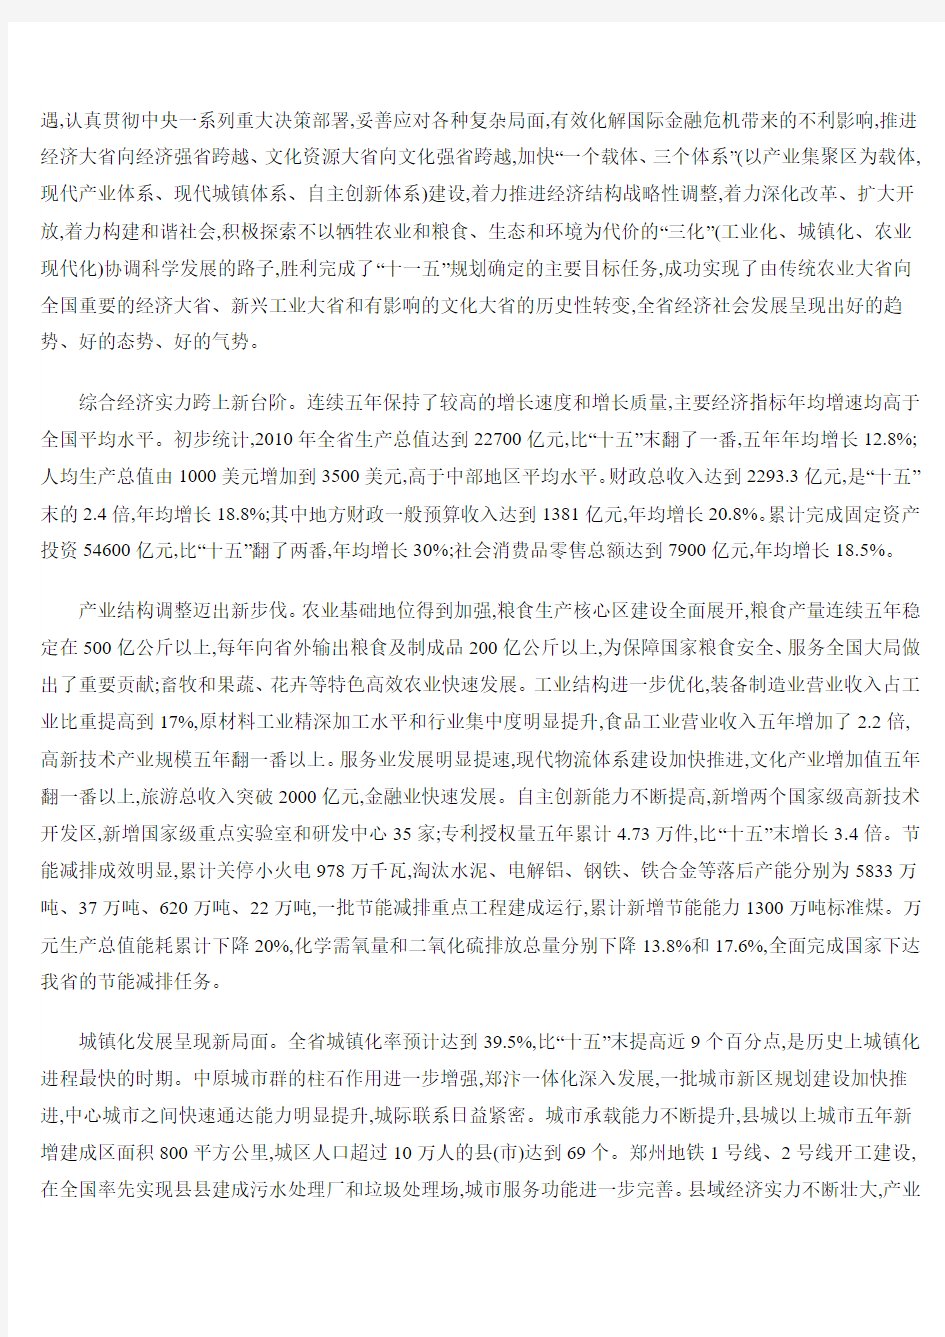 河南省国民经济和社会发展第十二个五年规划纲要(正式文)